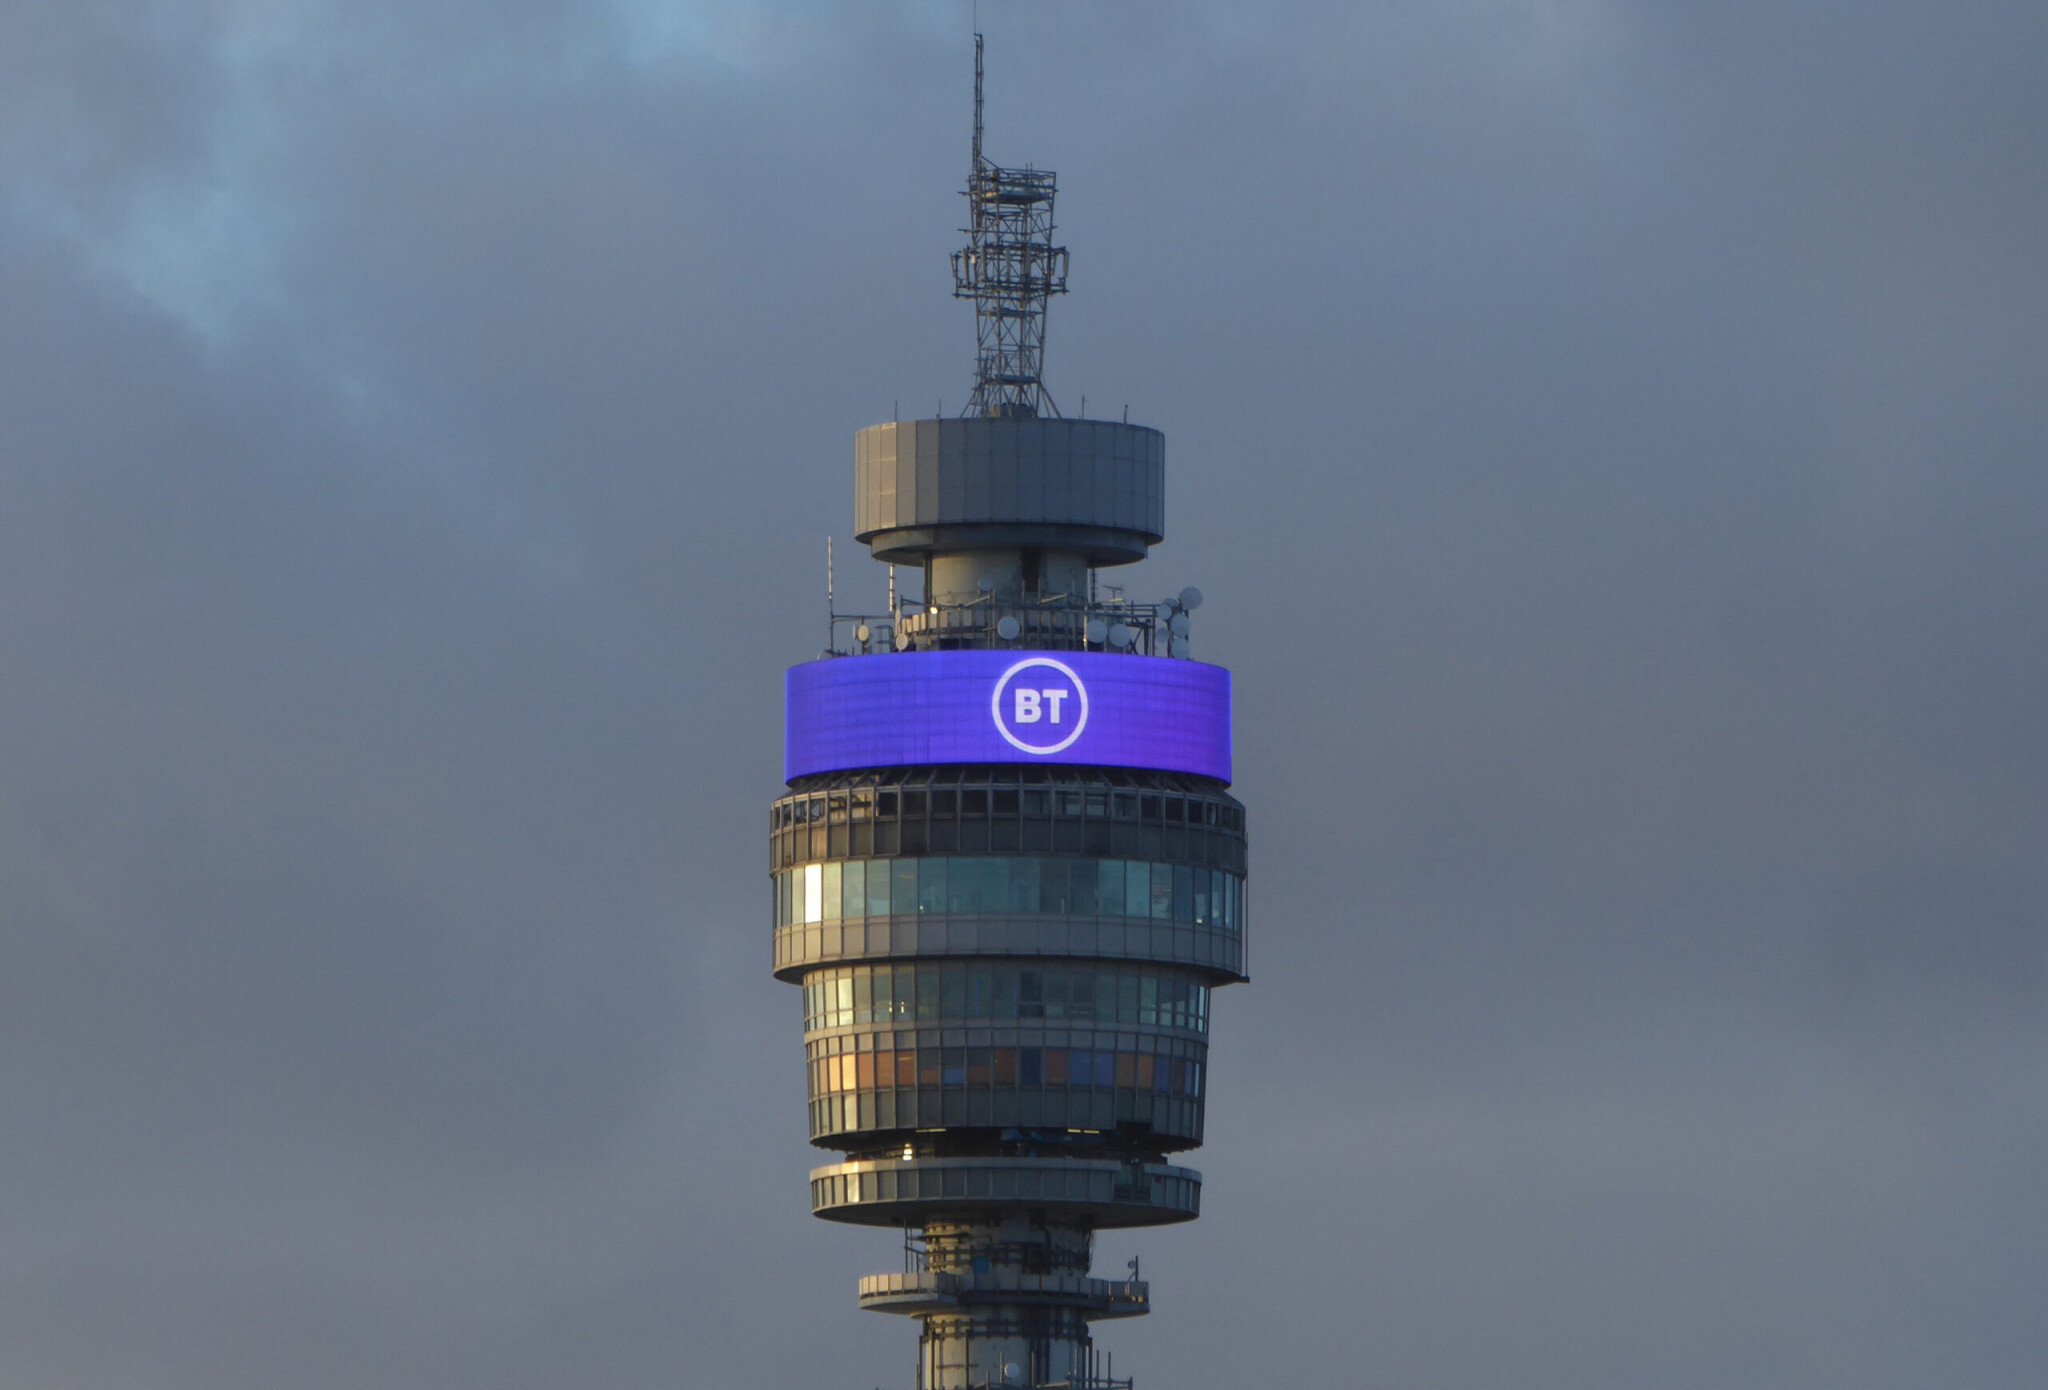 Místo telekomunikační věže luxusní hotel. Londýnská BT Tower získá nový život